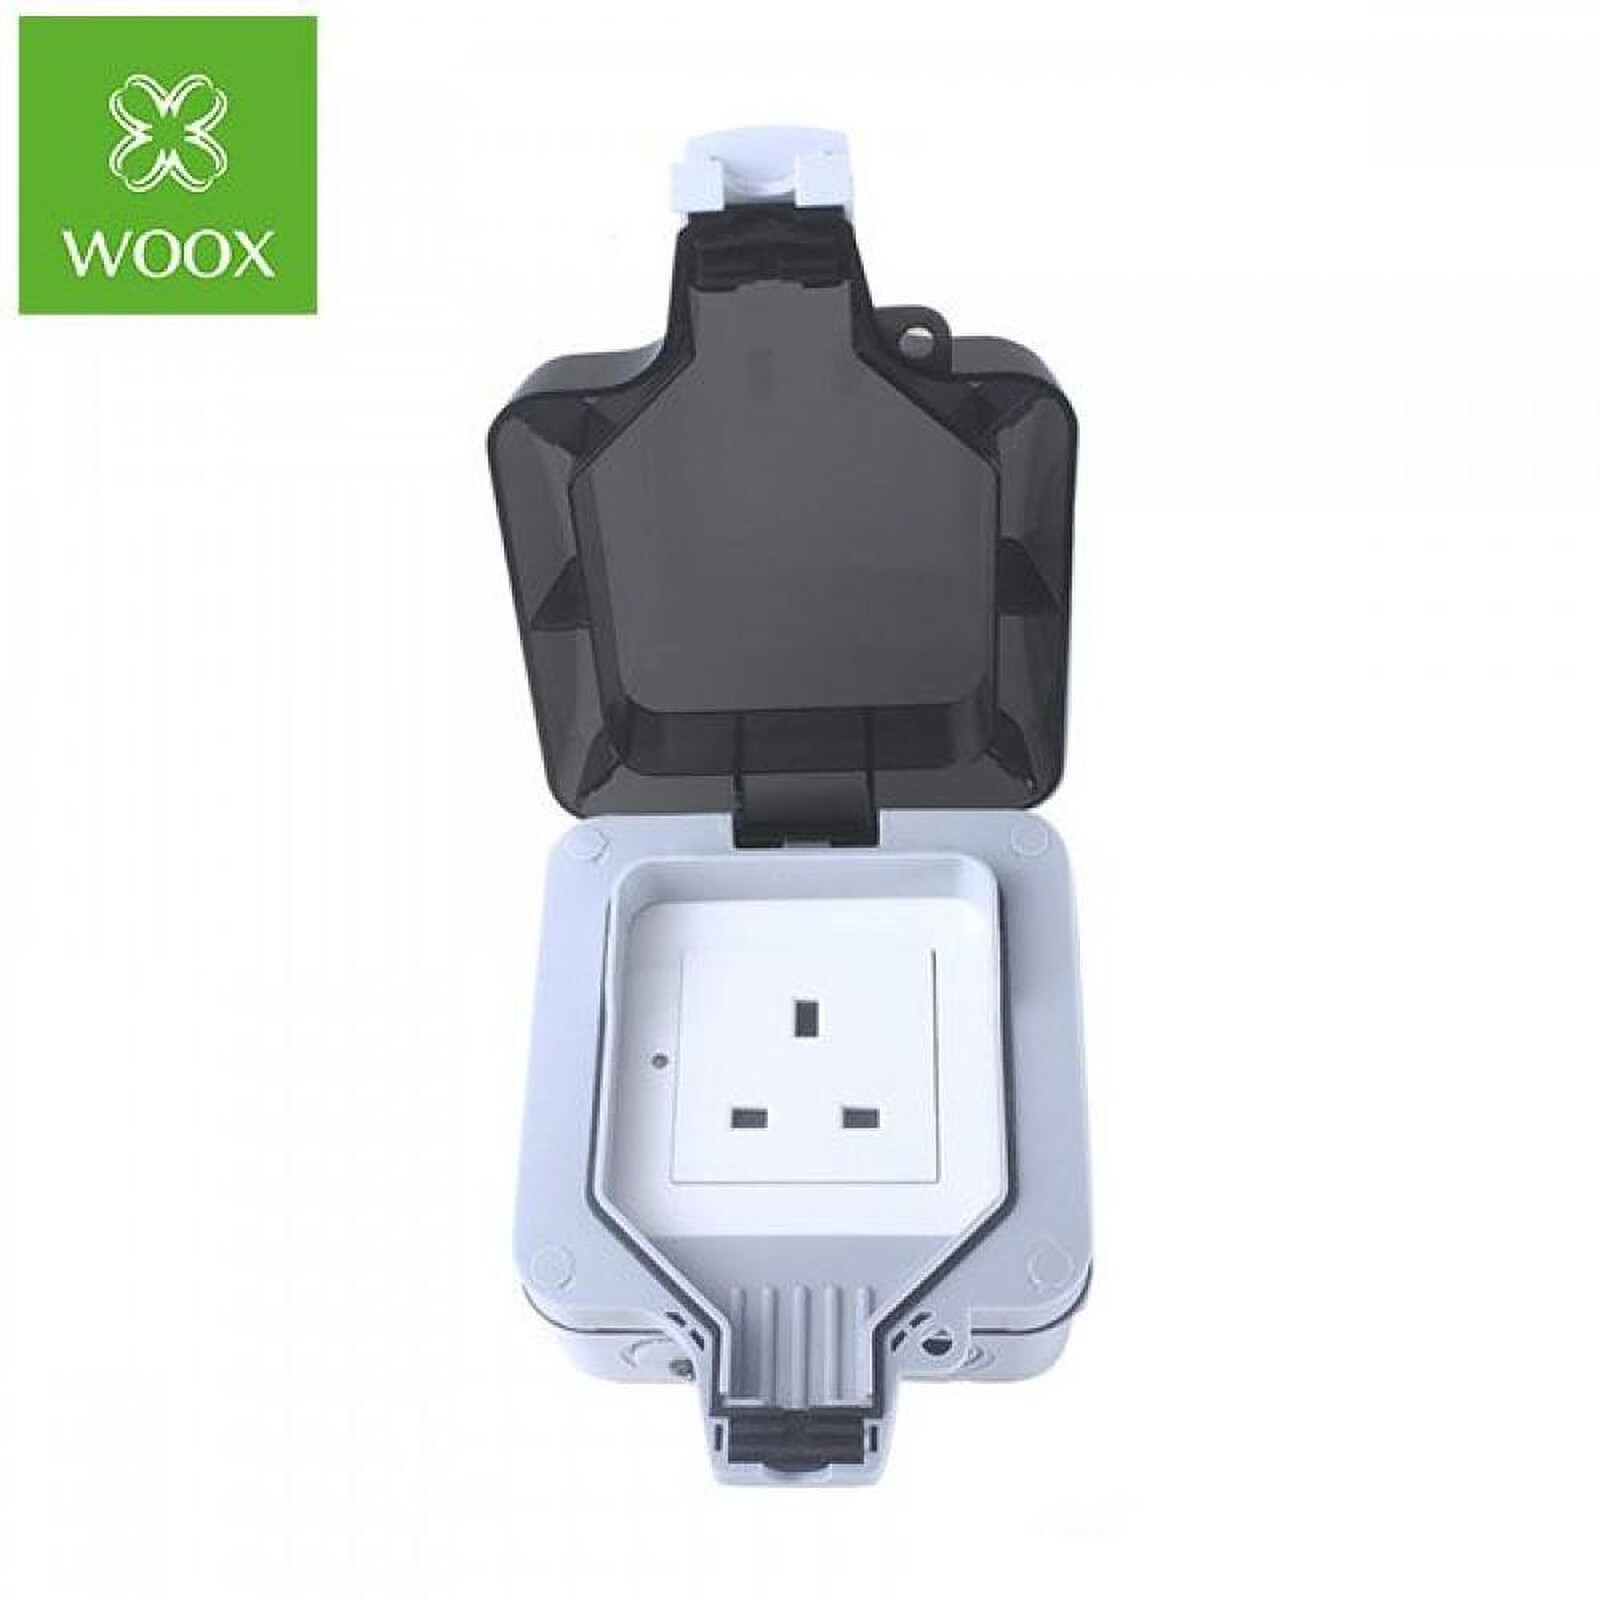 Woox - Prise extérieure intelligente UK R4051 - Prise connectée - LDLC